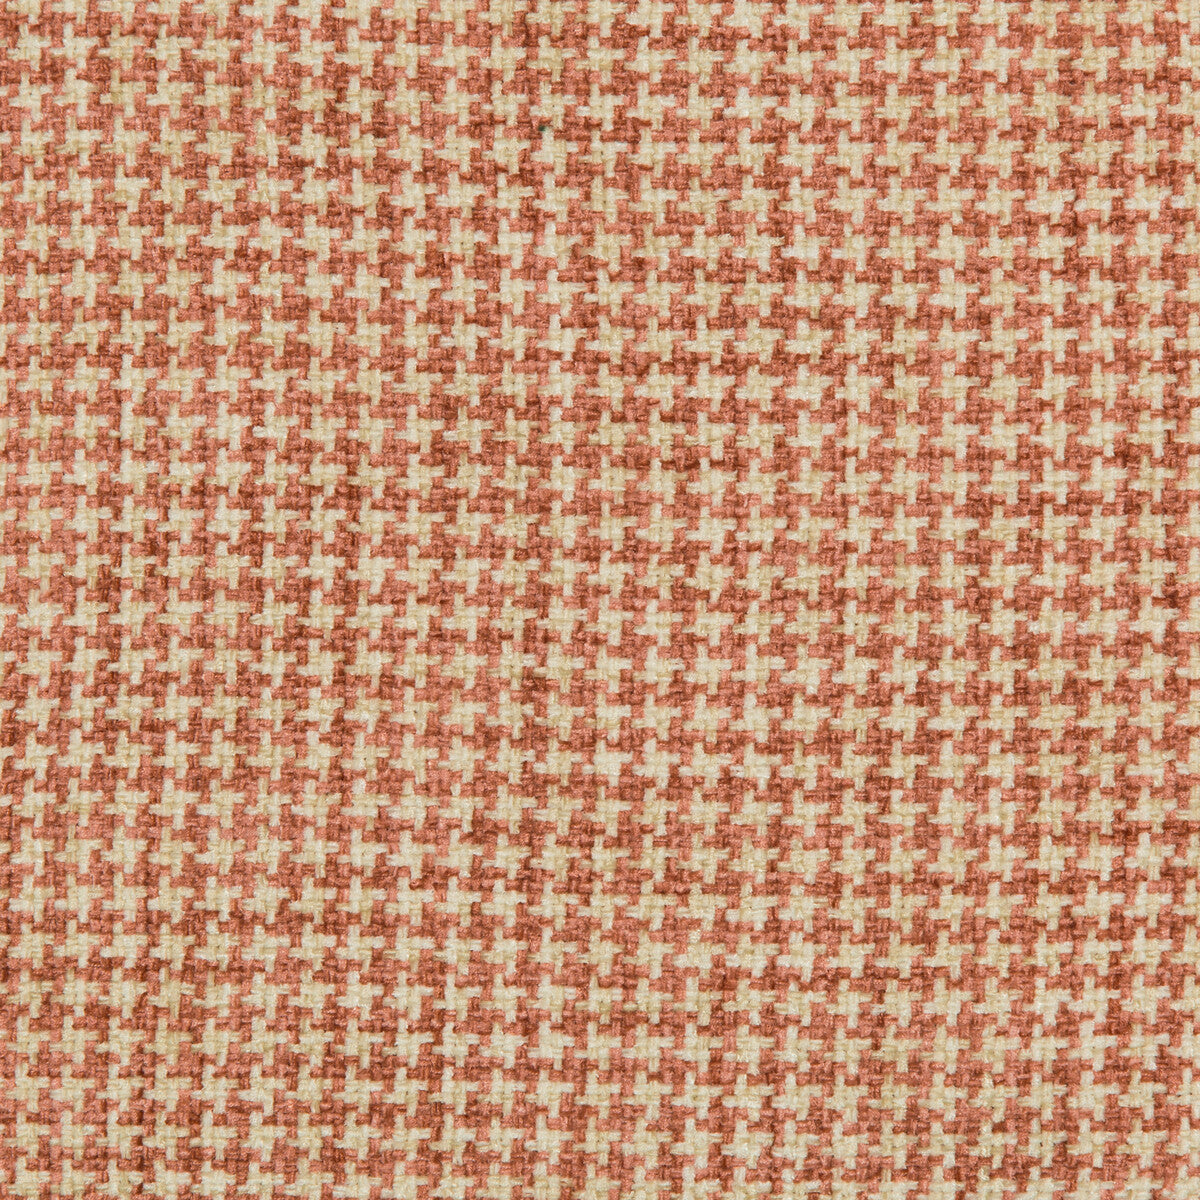 Kravet Basics fabric in 35778-12 color - pattern 35778.12.0 - by Kravet Basics